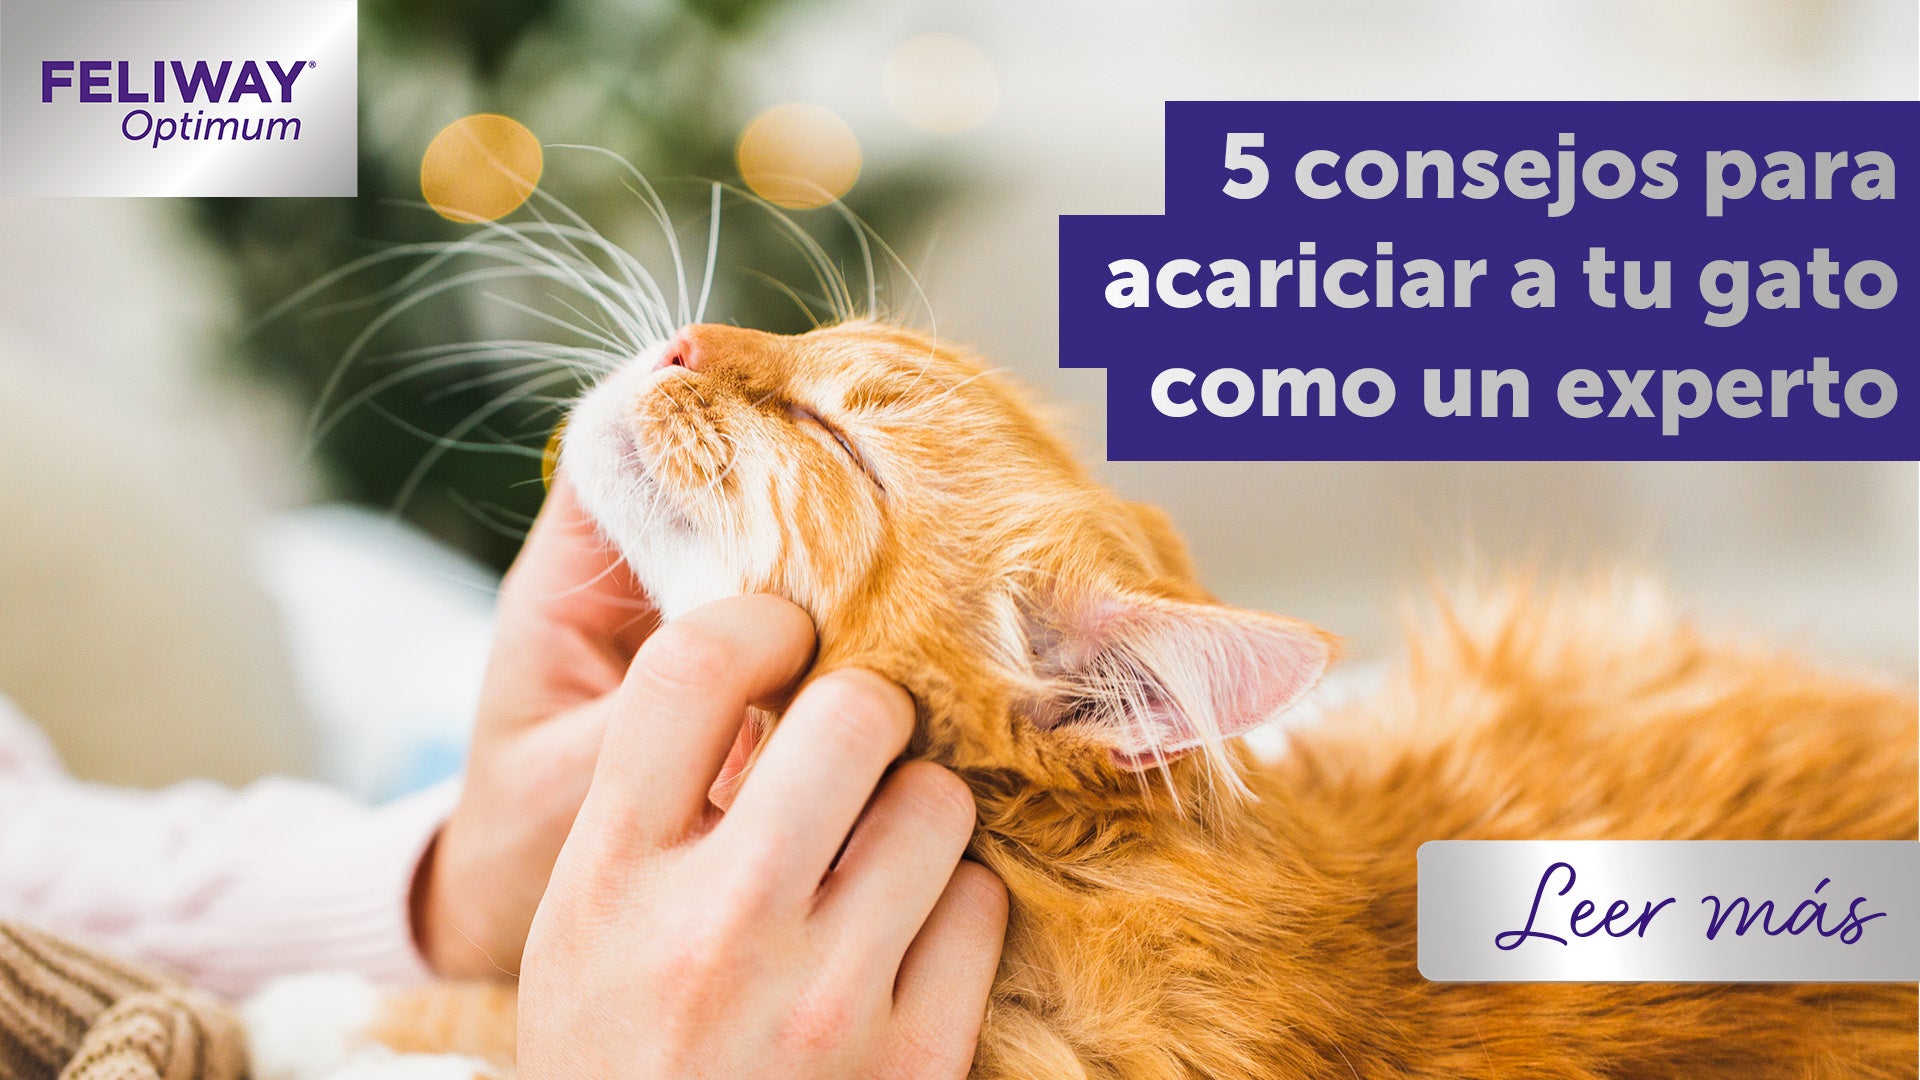 5 consejos para acariciar a tu gato como un experto